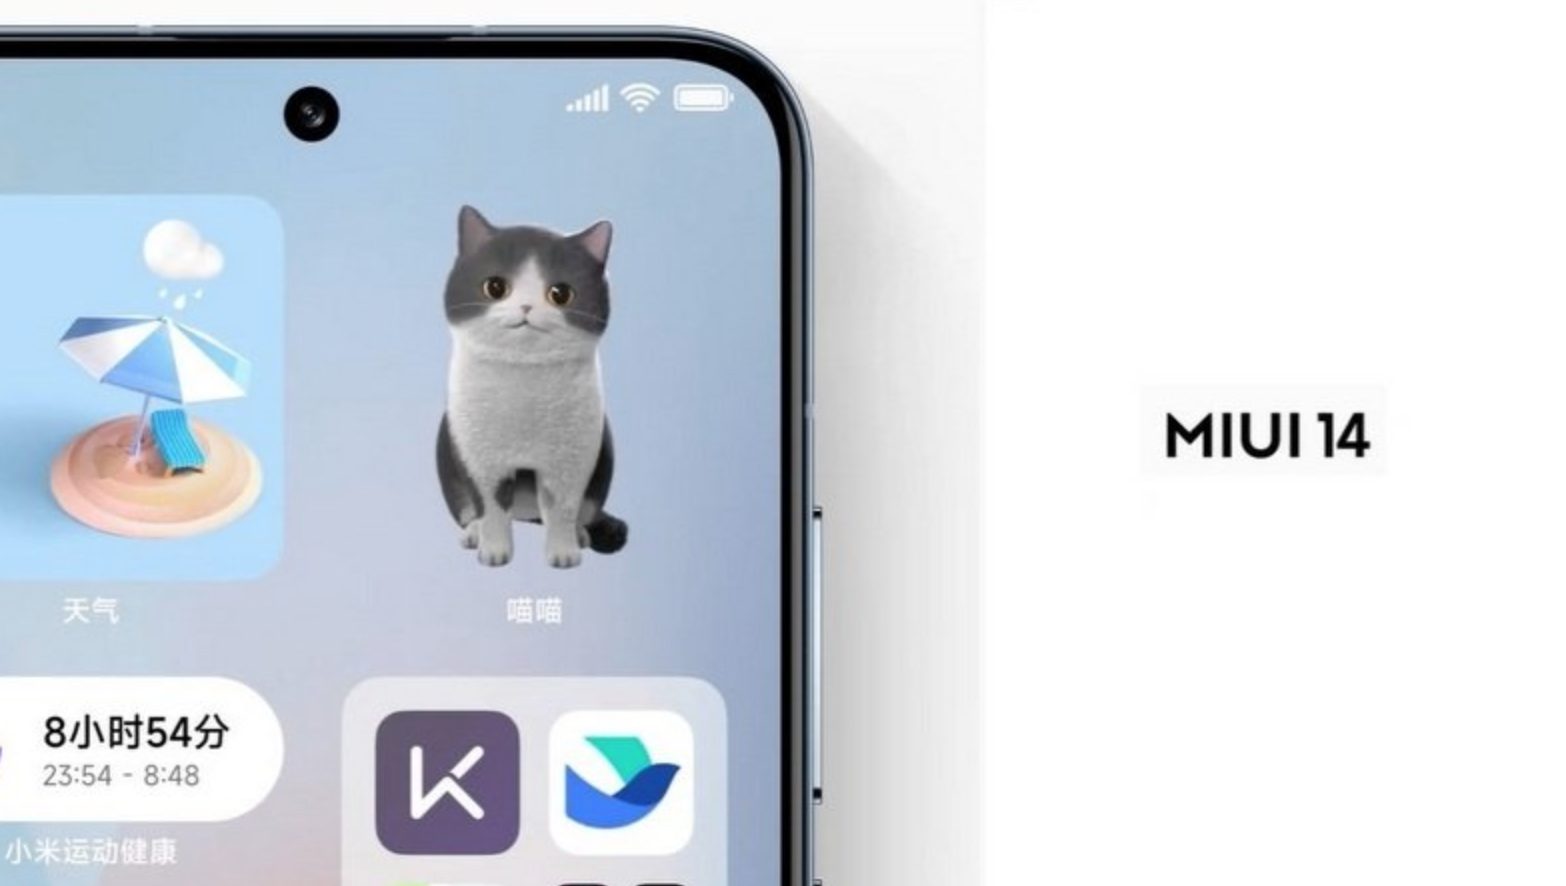 14 андроид miui. MIUI кот. Виджеты с котиками. Кот Виджет Xiaomi. MIUI 14.